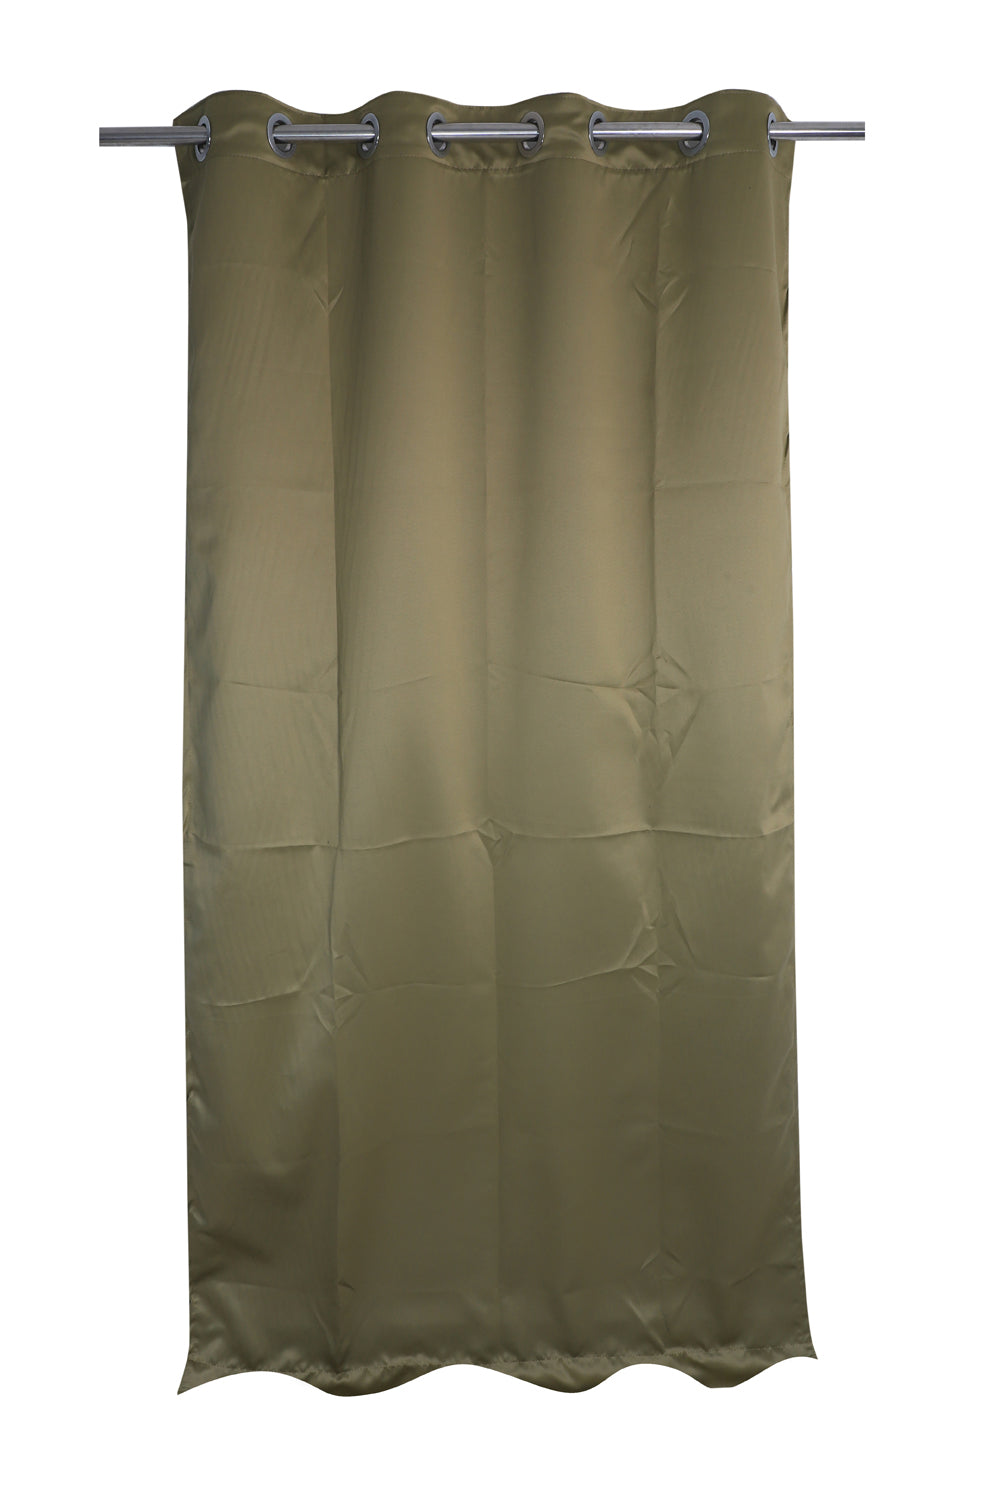 Blackout Plain Curtain - Green - PARDEWALE.in